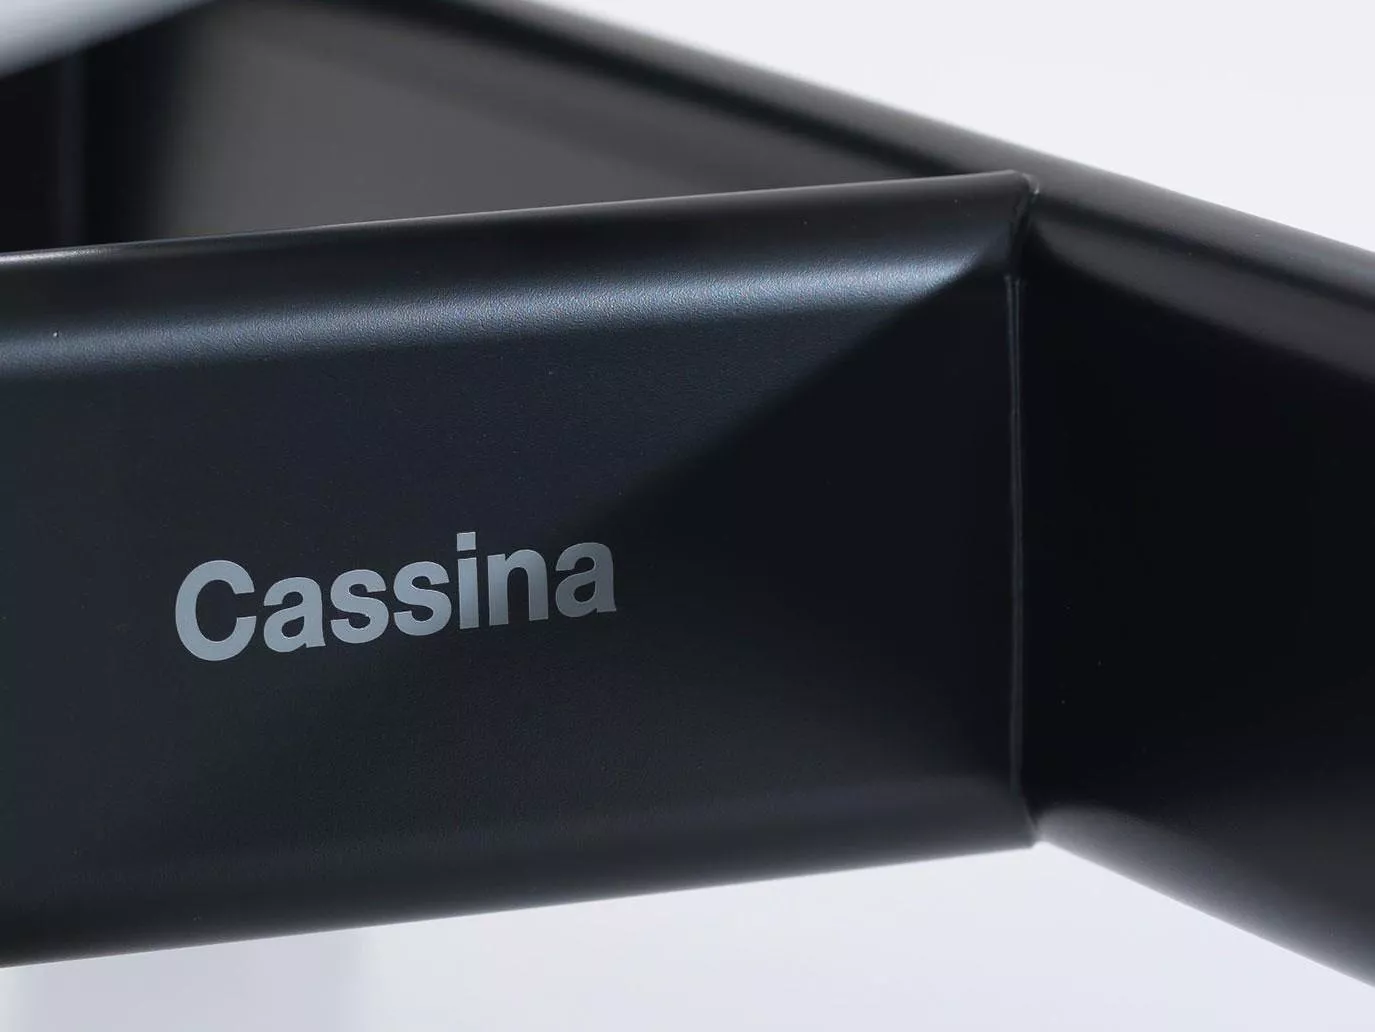 Шезлонг LC4 Cassina  — купить по цене фабрики